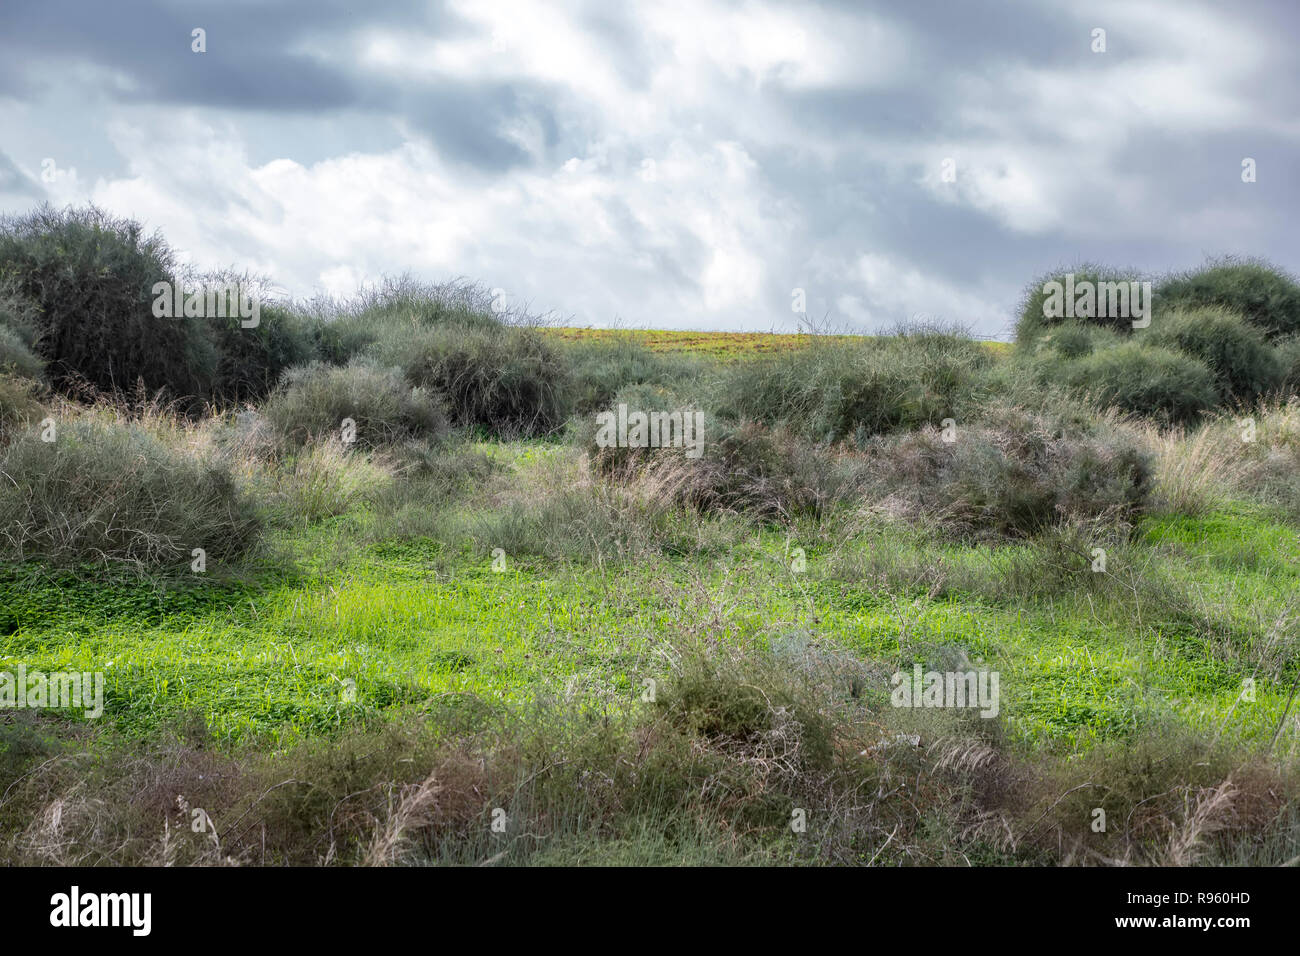 Felder abgedeckt mit grünem Gras und Büsche entlang der Kanten unter einem Himmel mit Gewitterwolken. Landschaft Stockfoto